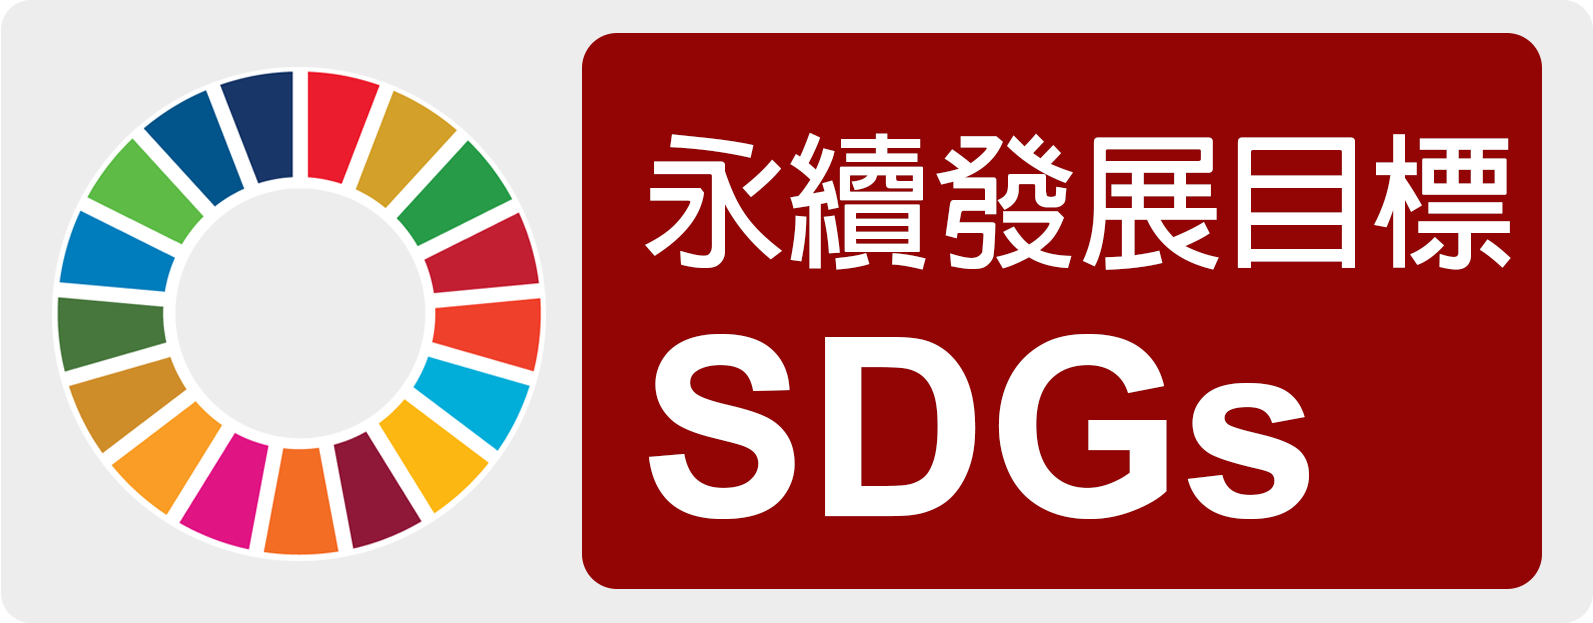 SDGs永續指標